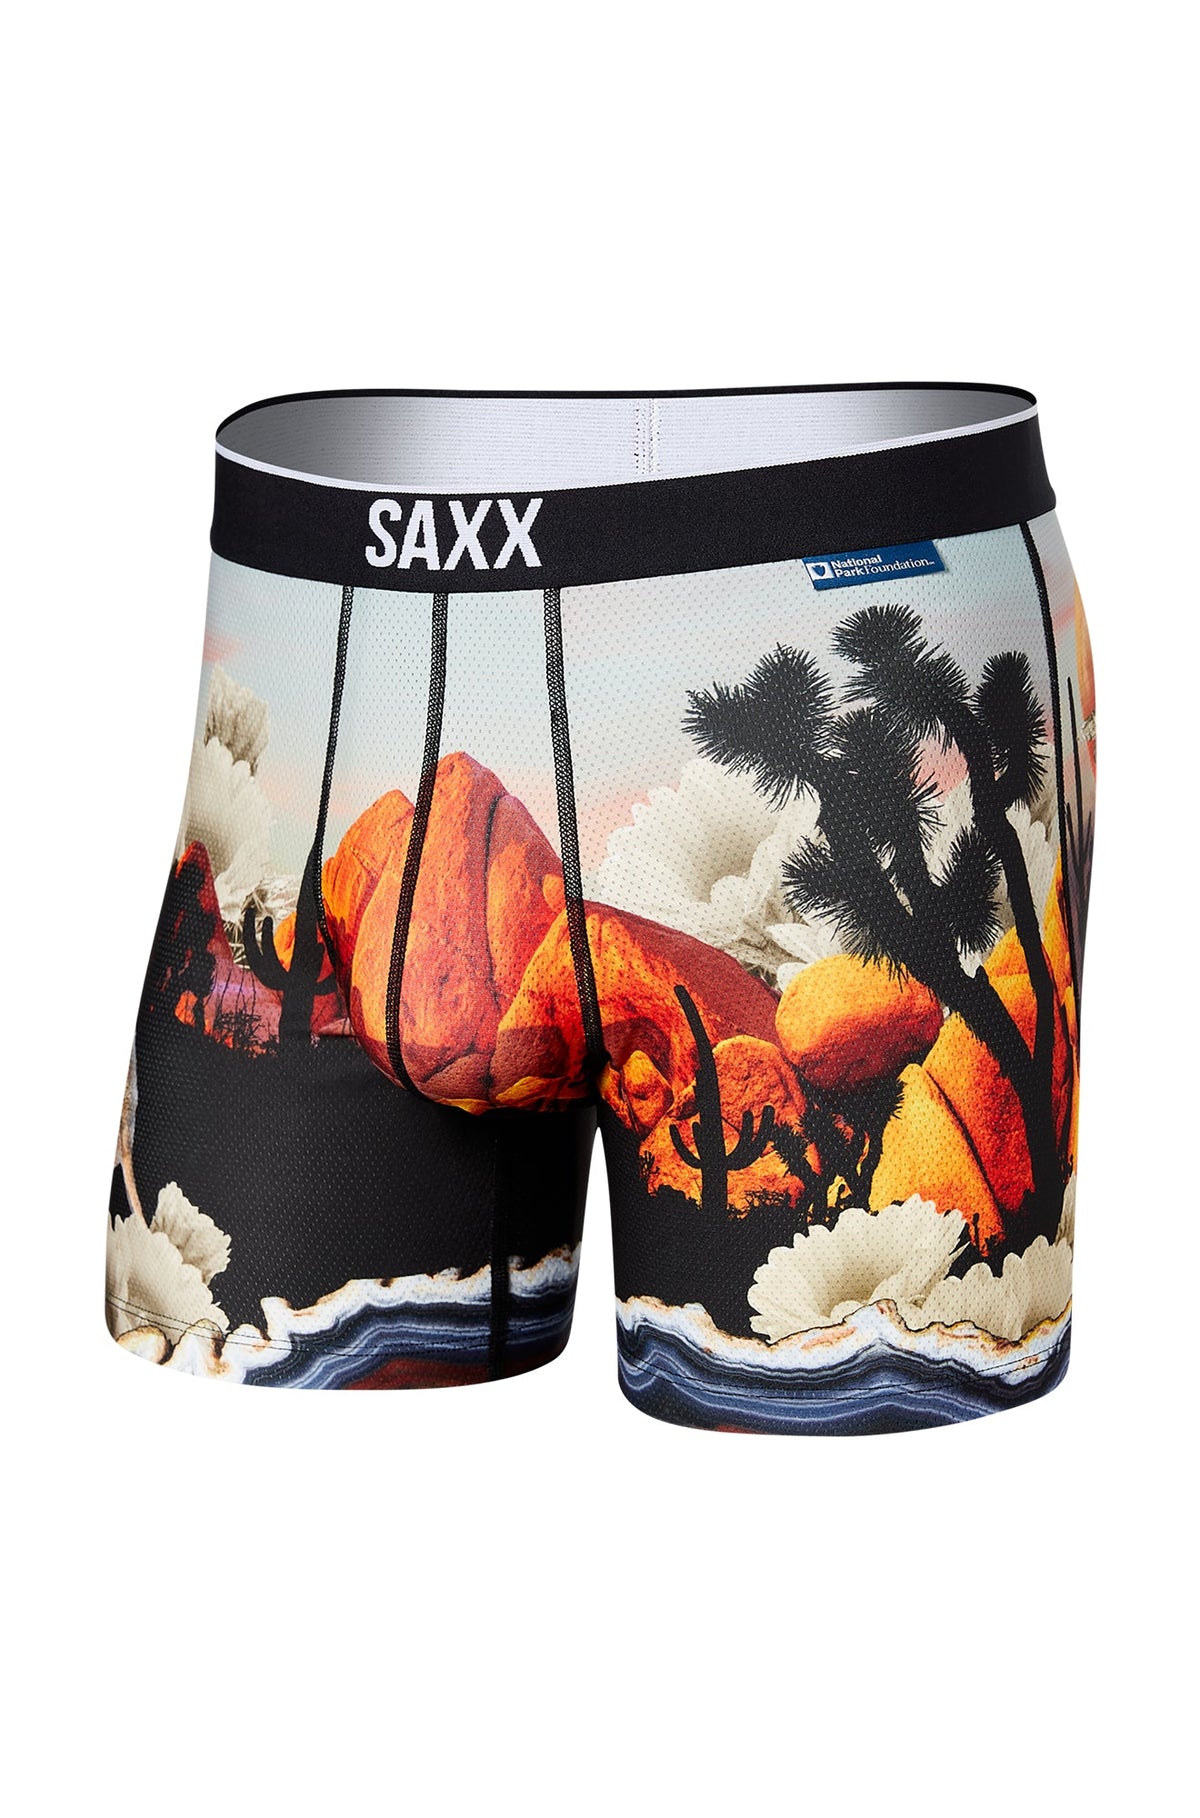 Sous-vêtement/boxer pour homme par Saxx | SXBB29 JST | Machemise.ca, vêtements mode pour hommes